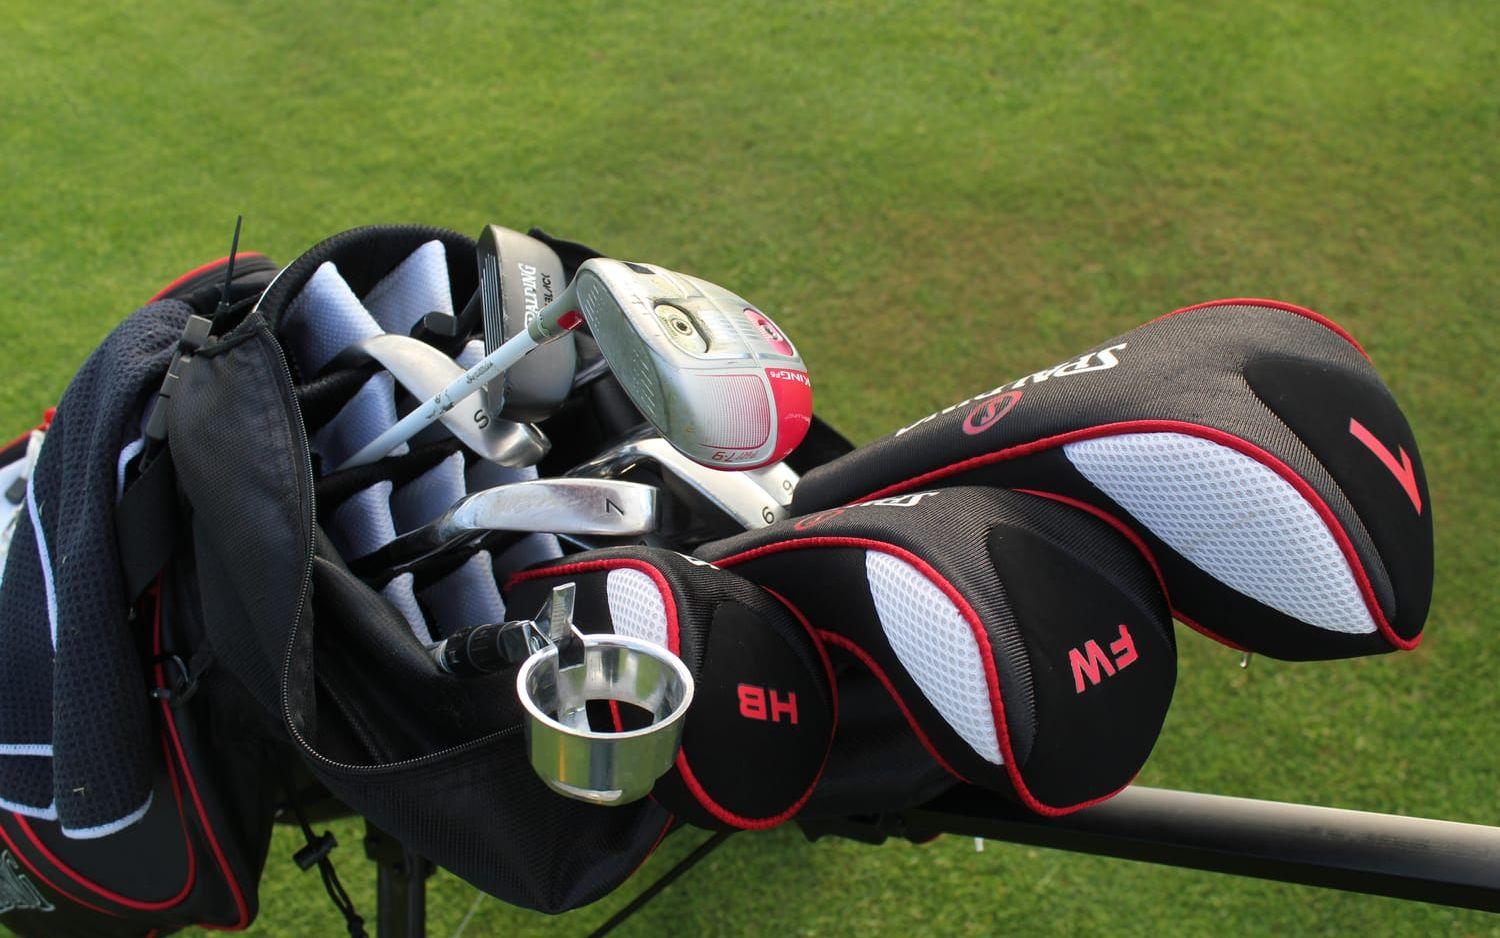 Det finns alla möjliga sorters klubbor i golfbagen beroende på underlag och avstånd.